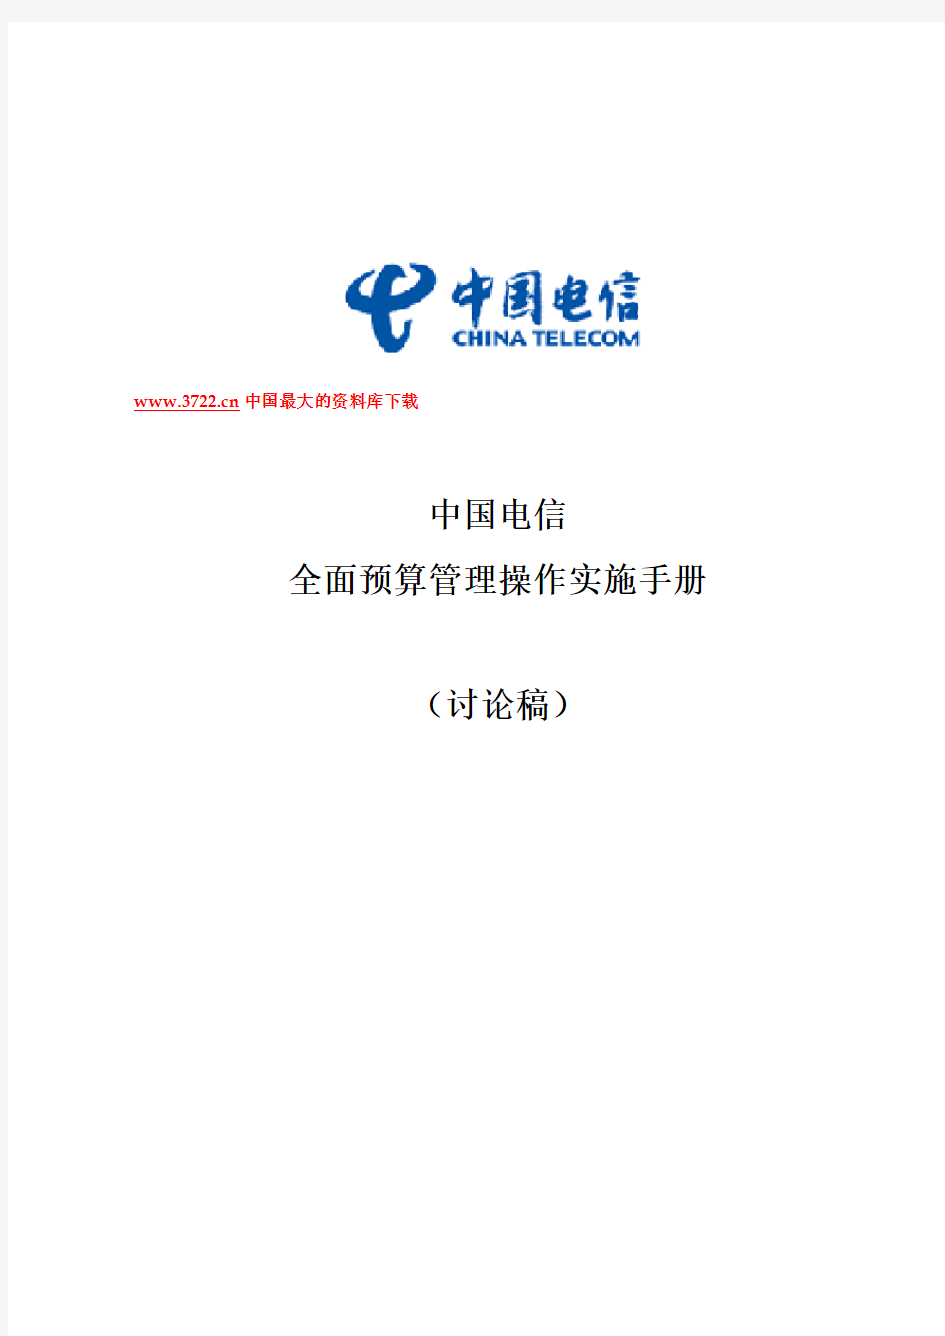 中国电信全面预算管理操作实施手册template重要备用